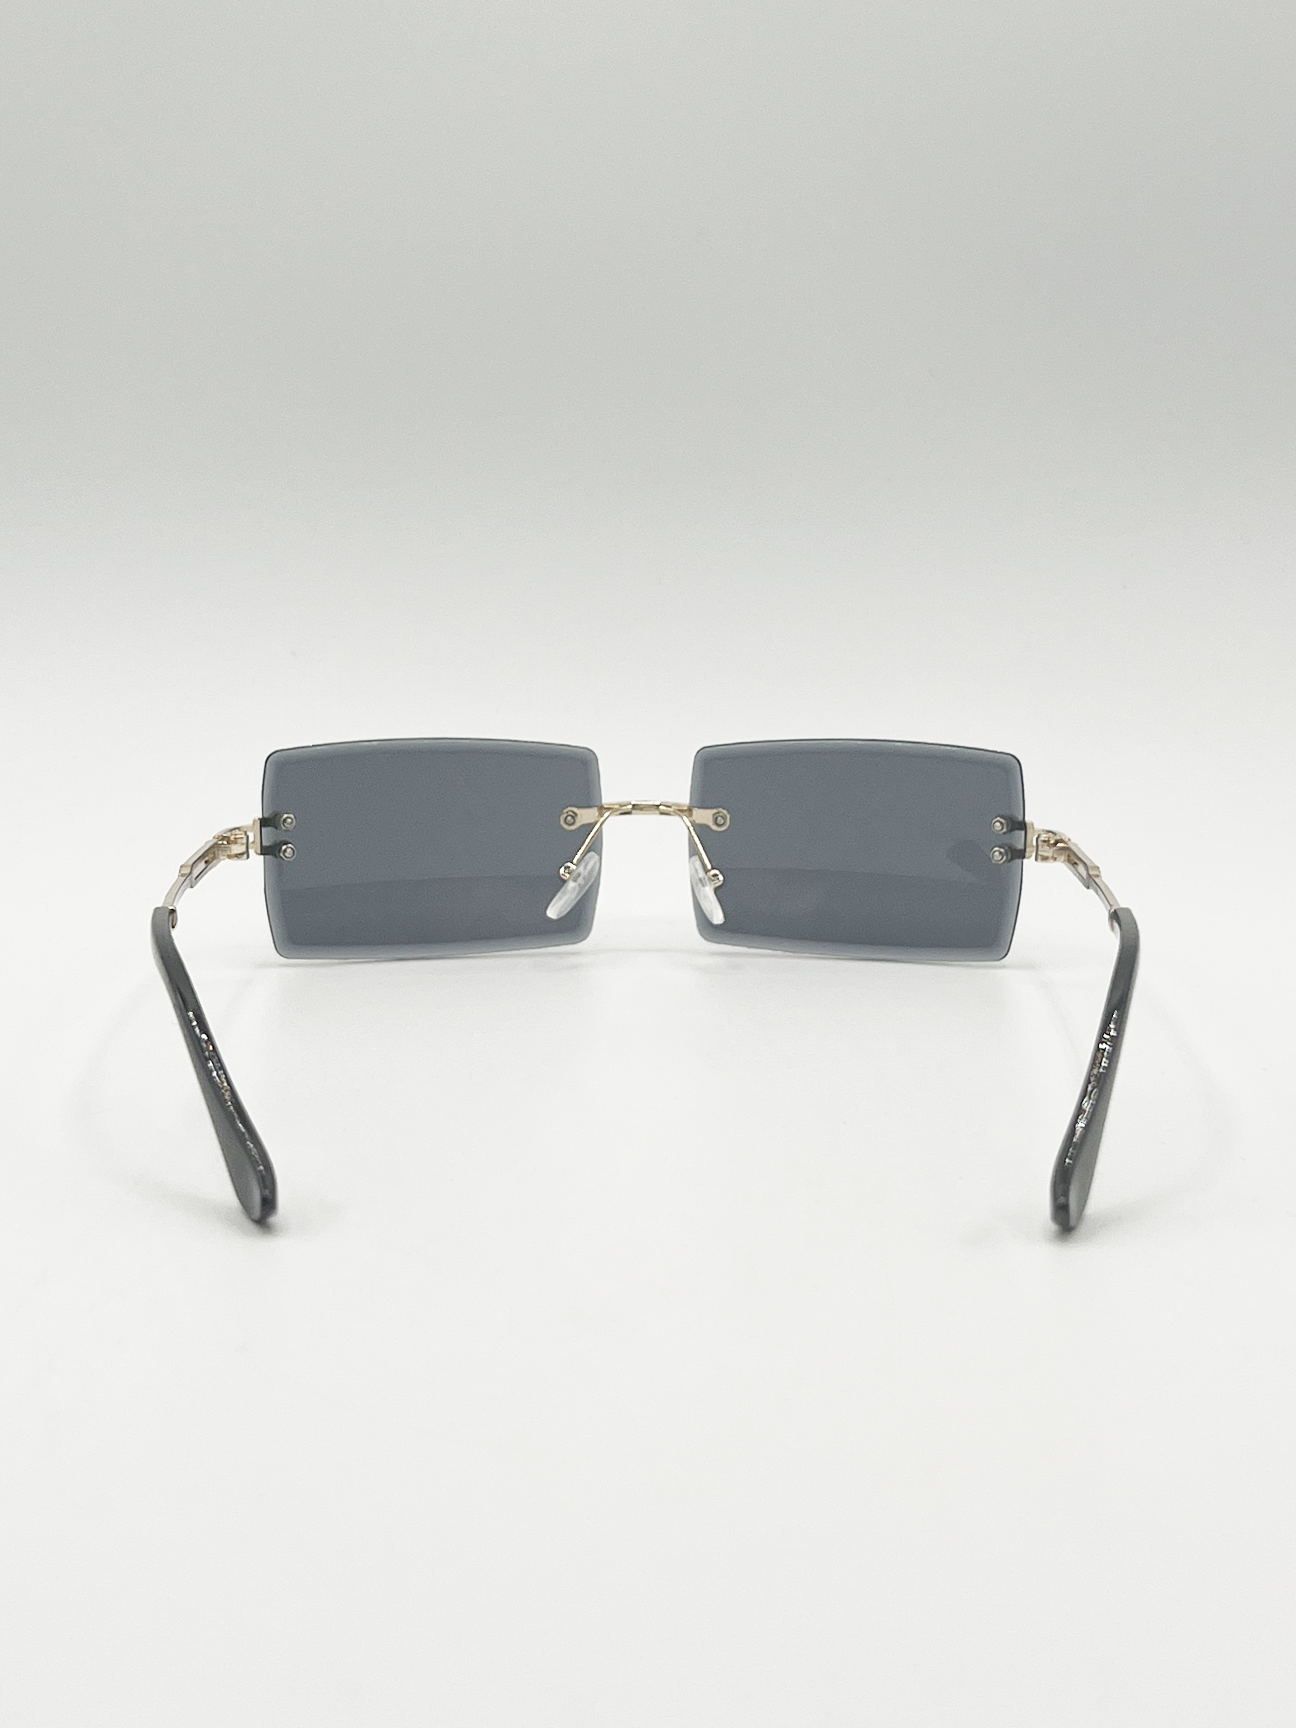 Frameless Square Sunglasses in Black